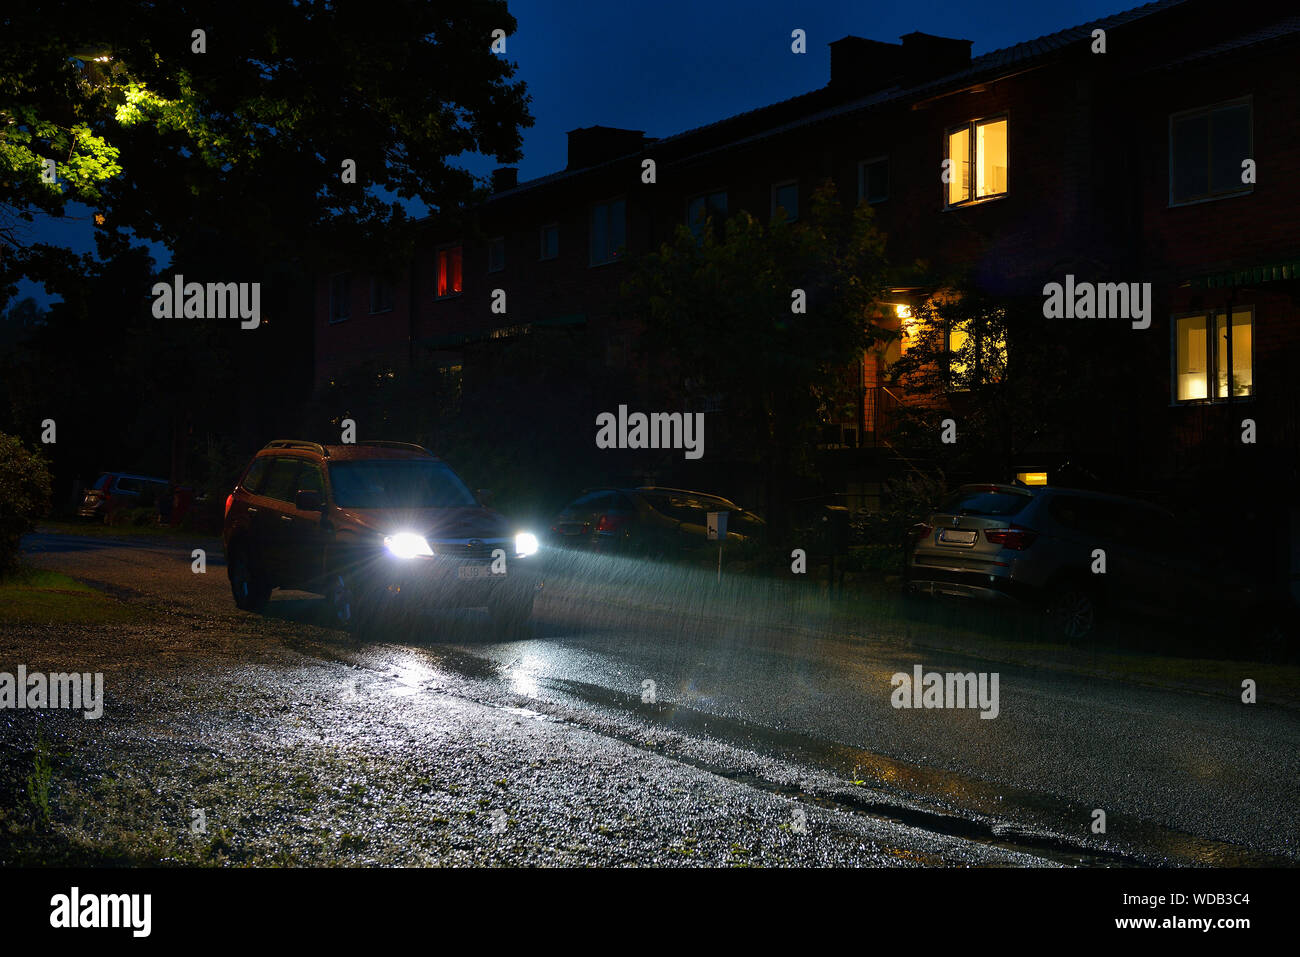 Car on street at rainy night Stock Photo